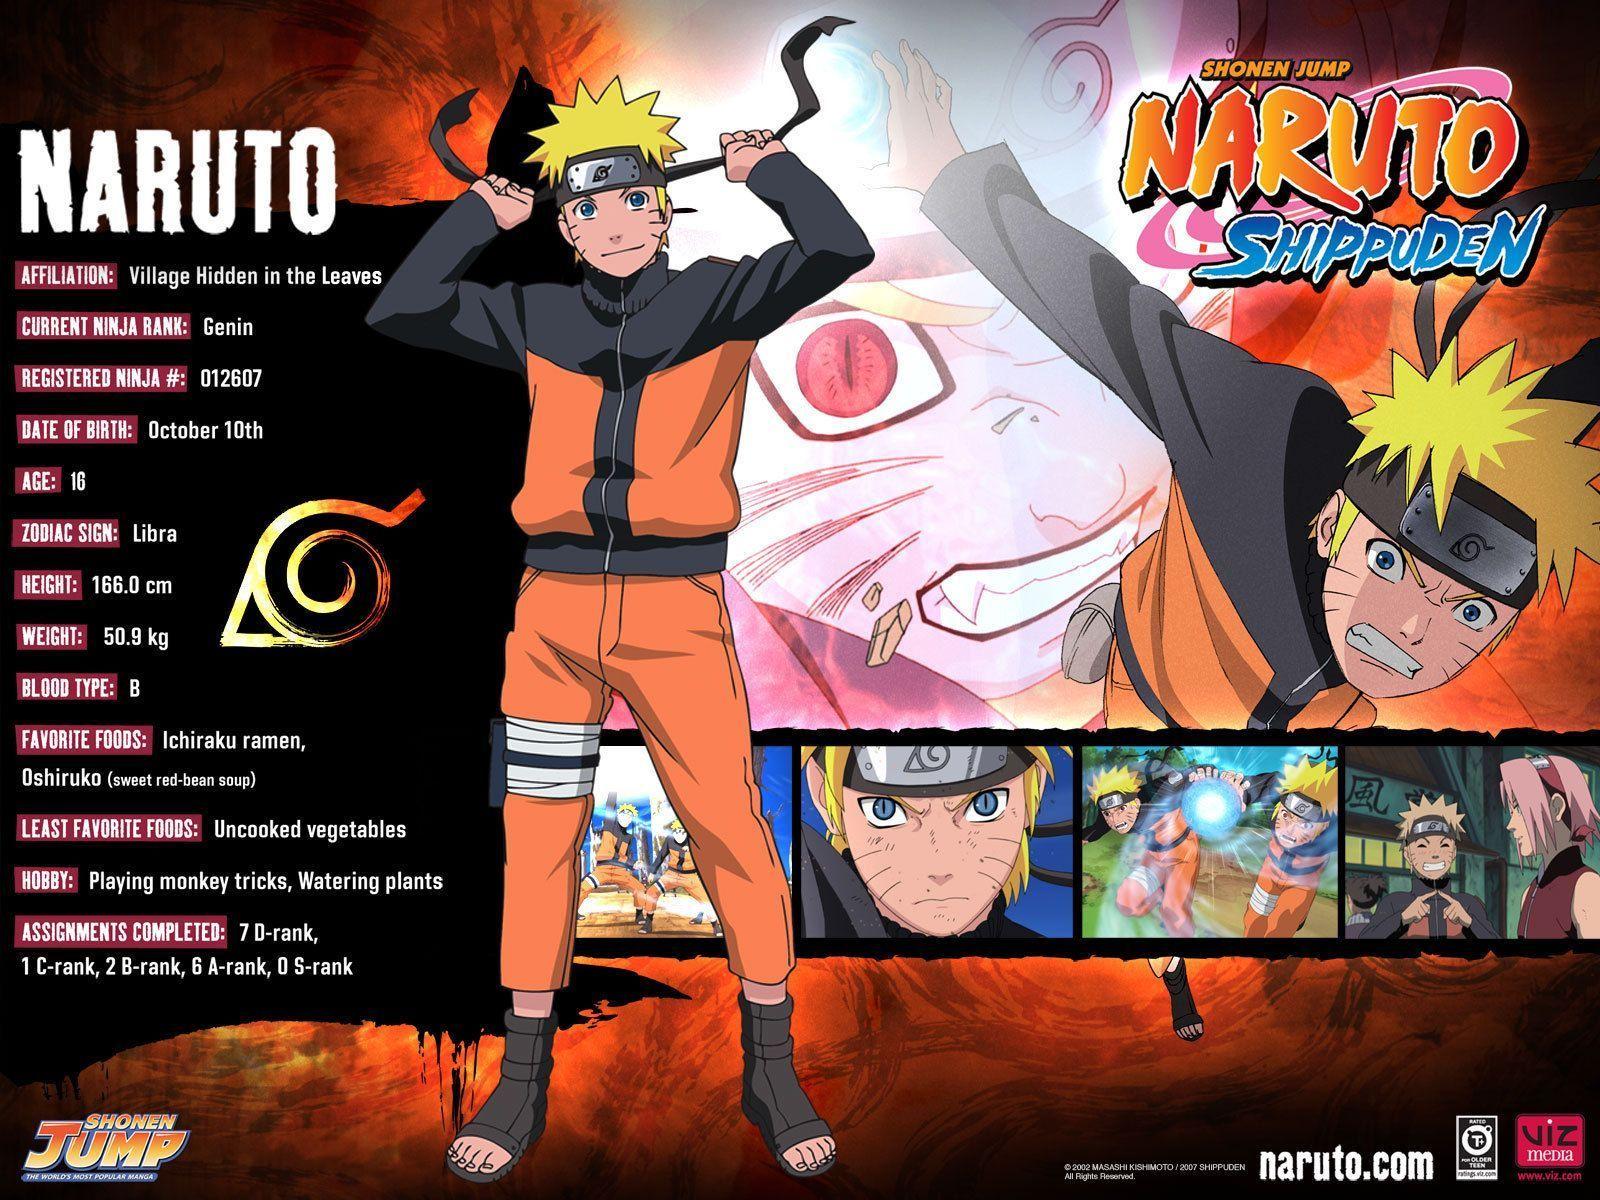 Naruto Shippuden Wallpaper Terbaru 2015